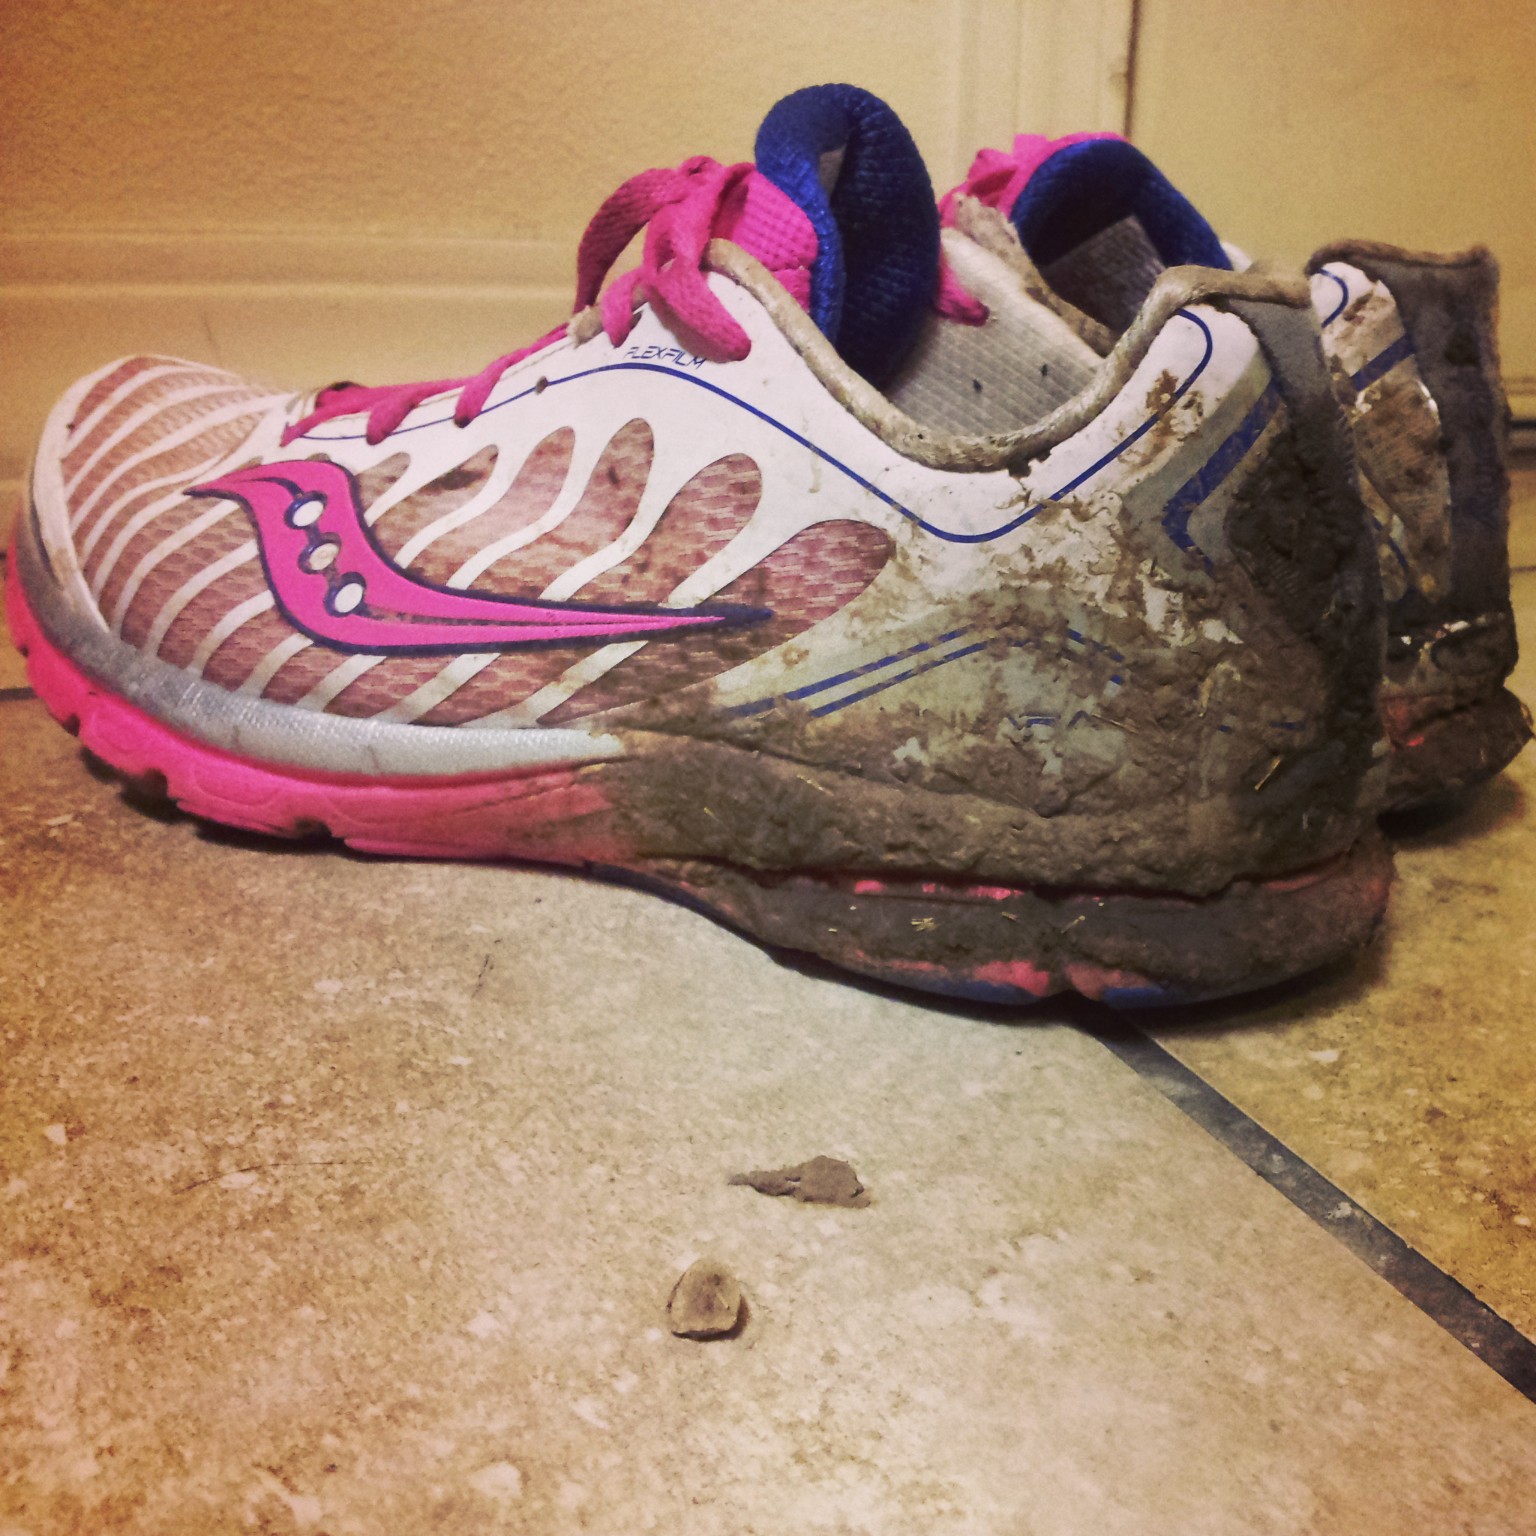 Muddy Running Shoes